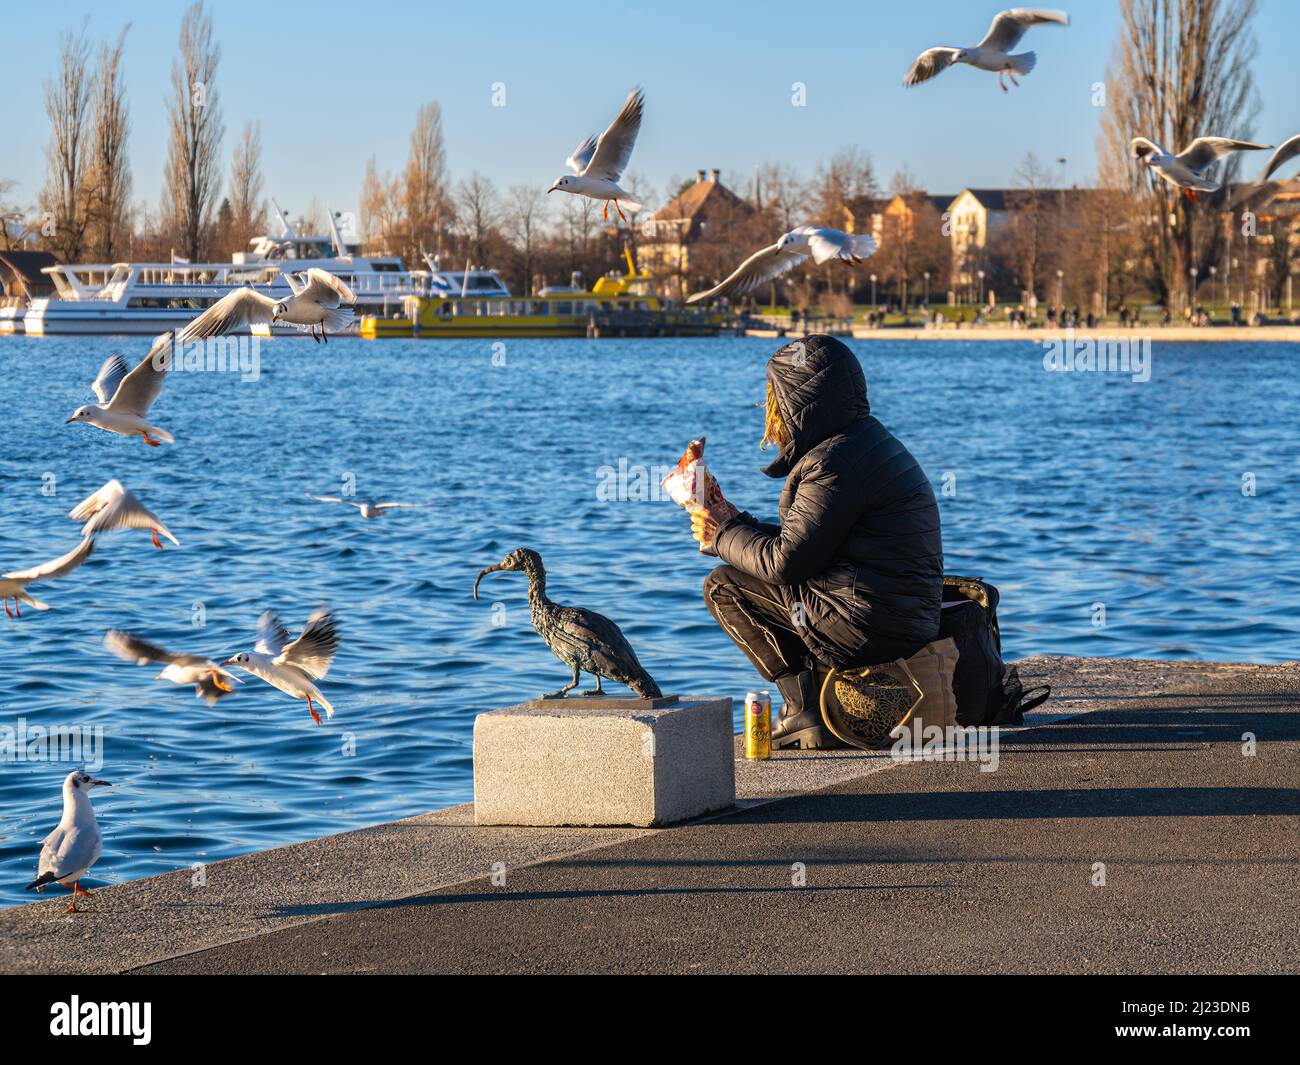 Zug, Schweiz - 31. Dezember 2021: Eine einsame Frau sitzt am Rande des Wassers und füttert Vögel, umgeben von fliegenden Möwen Stockfoto